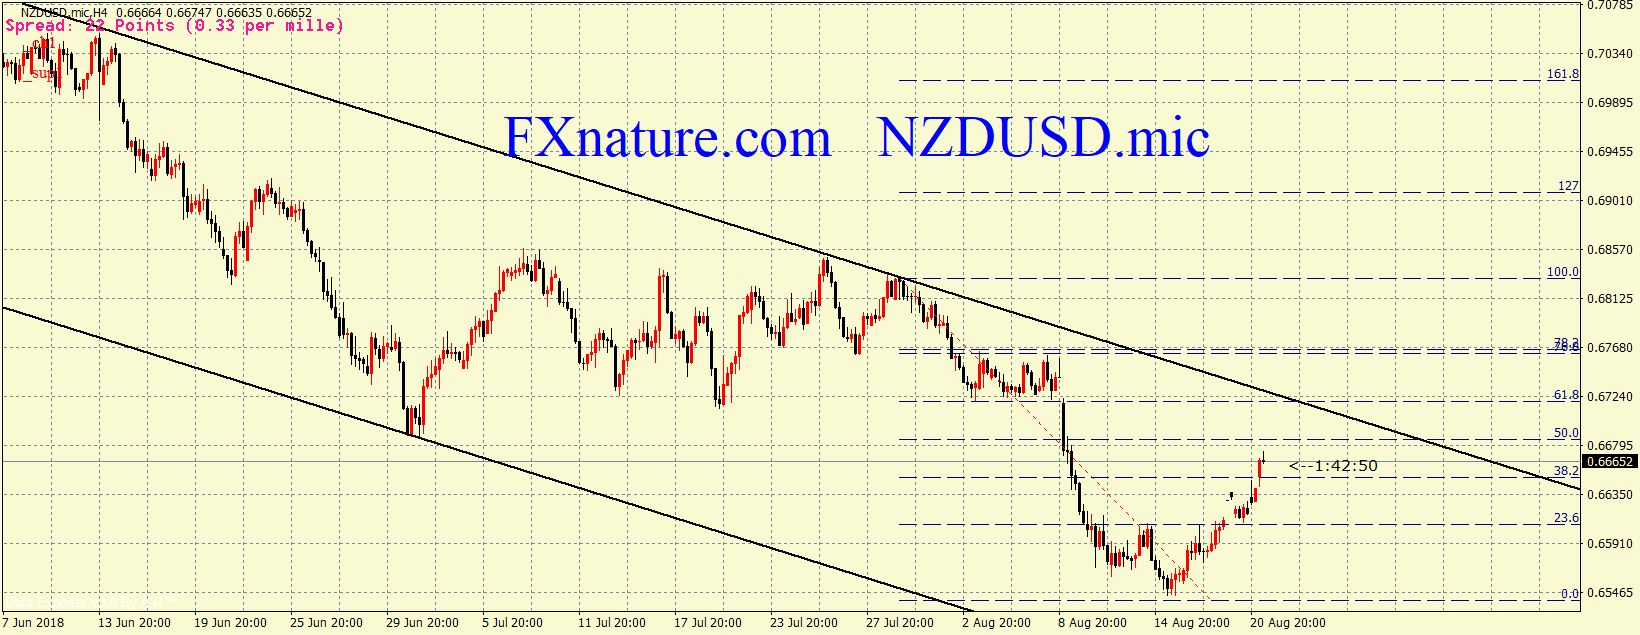 دلار نیوزلند به دلار